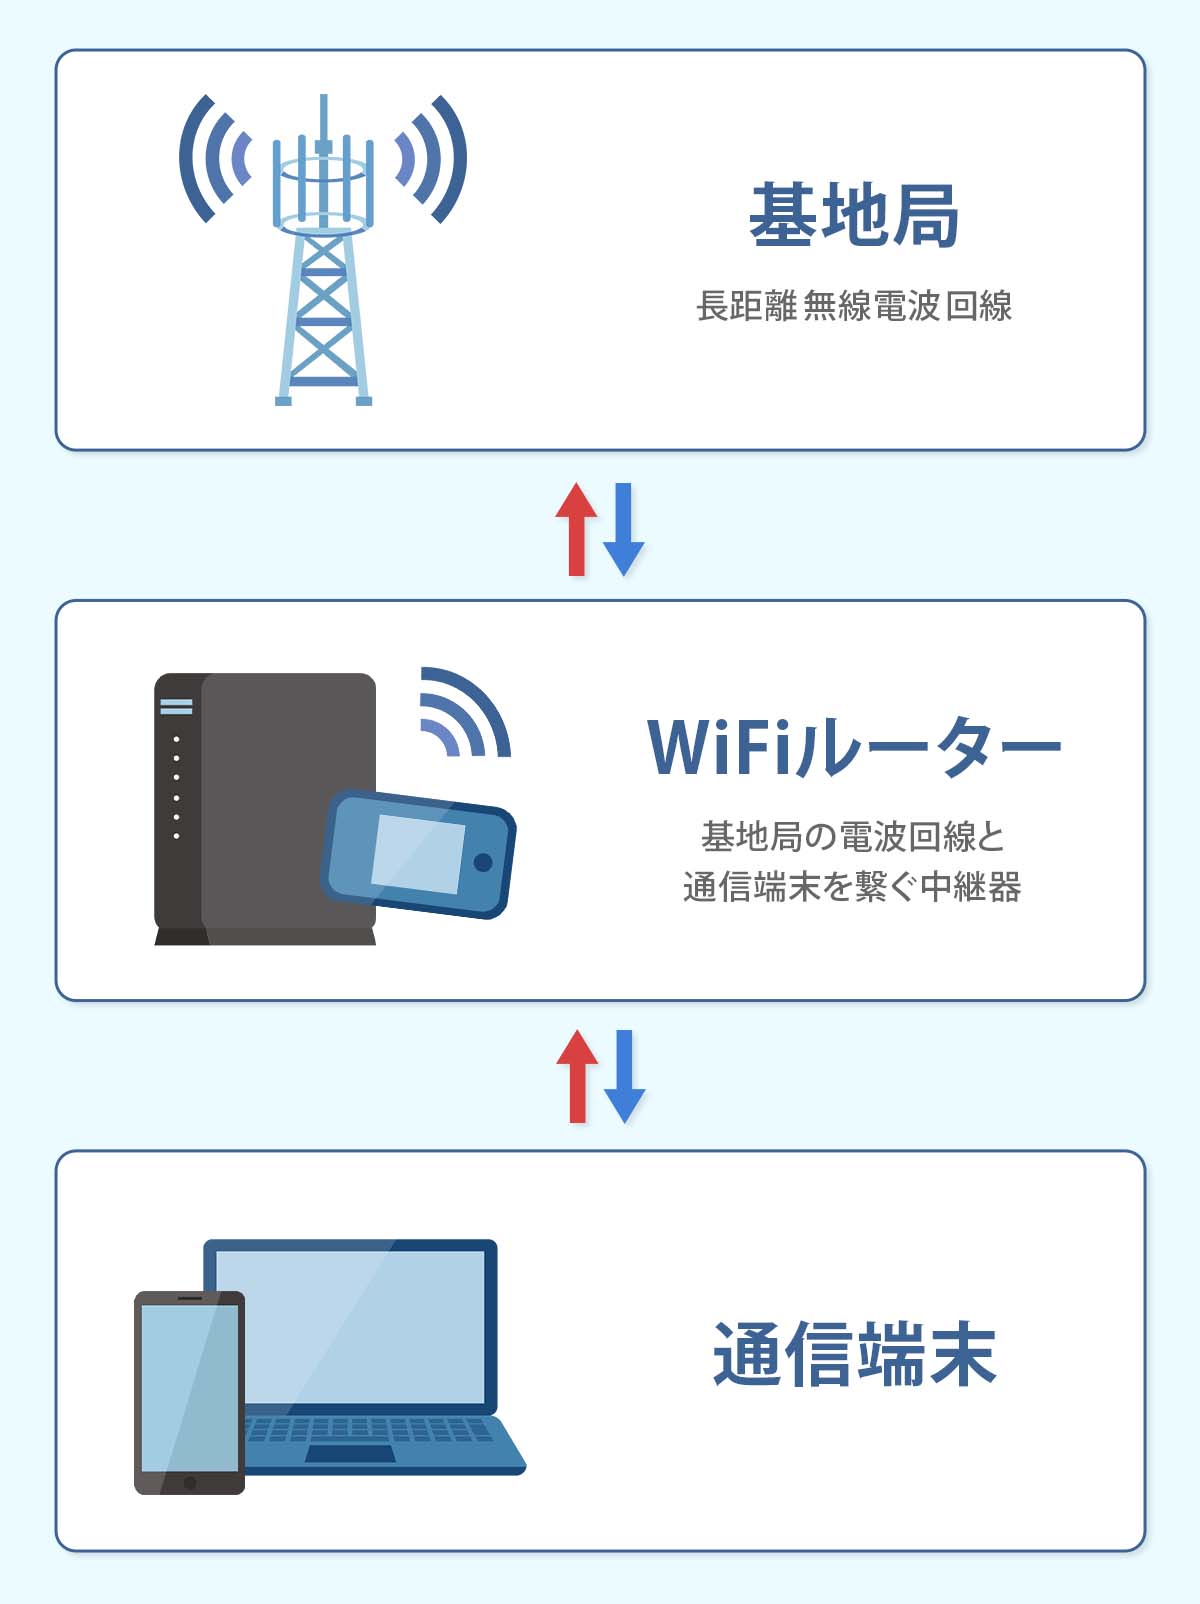 WiFiが繋がる仕組みの図解